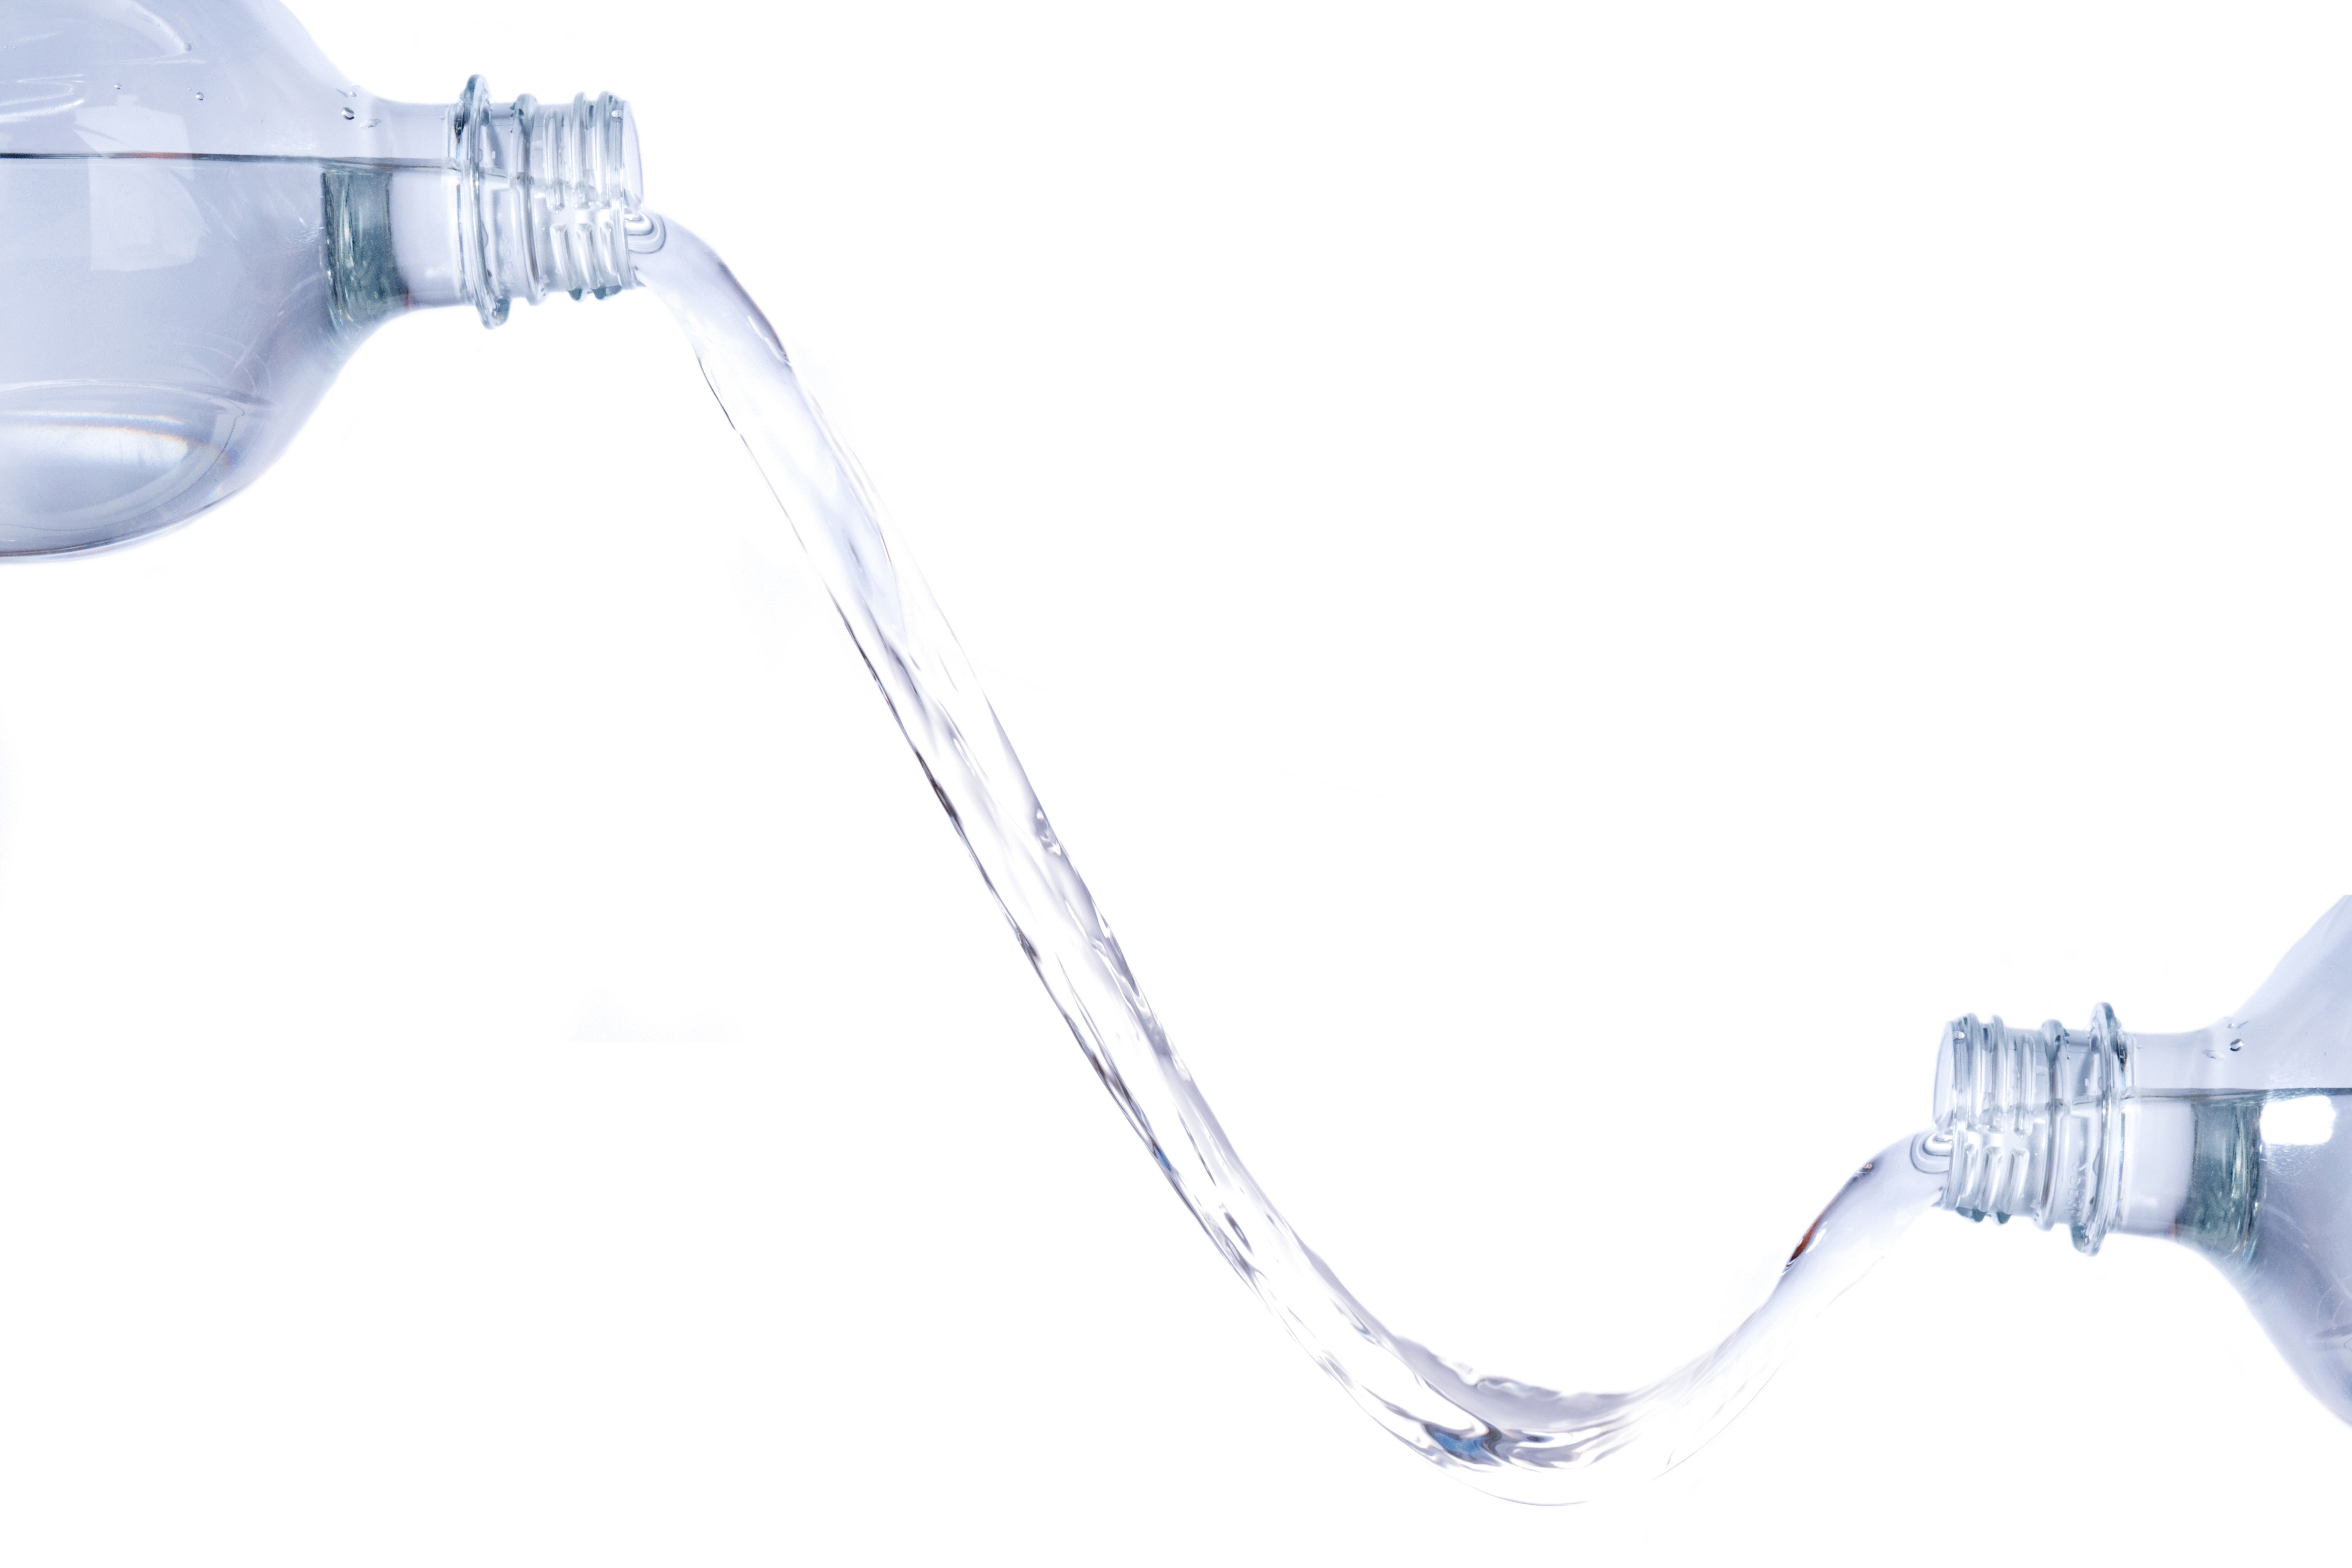 В бутилированной воде нашли опасные для человека соединения